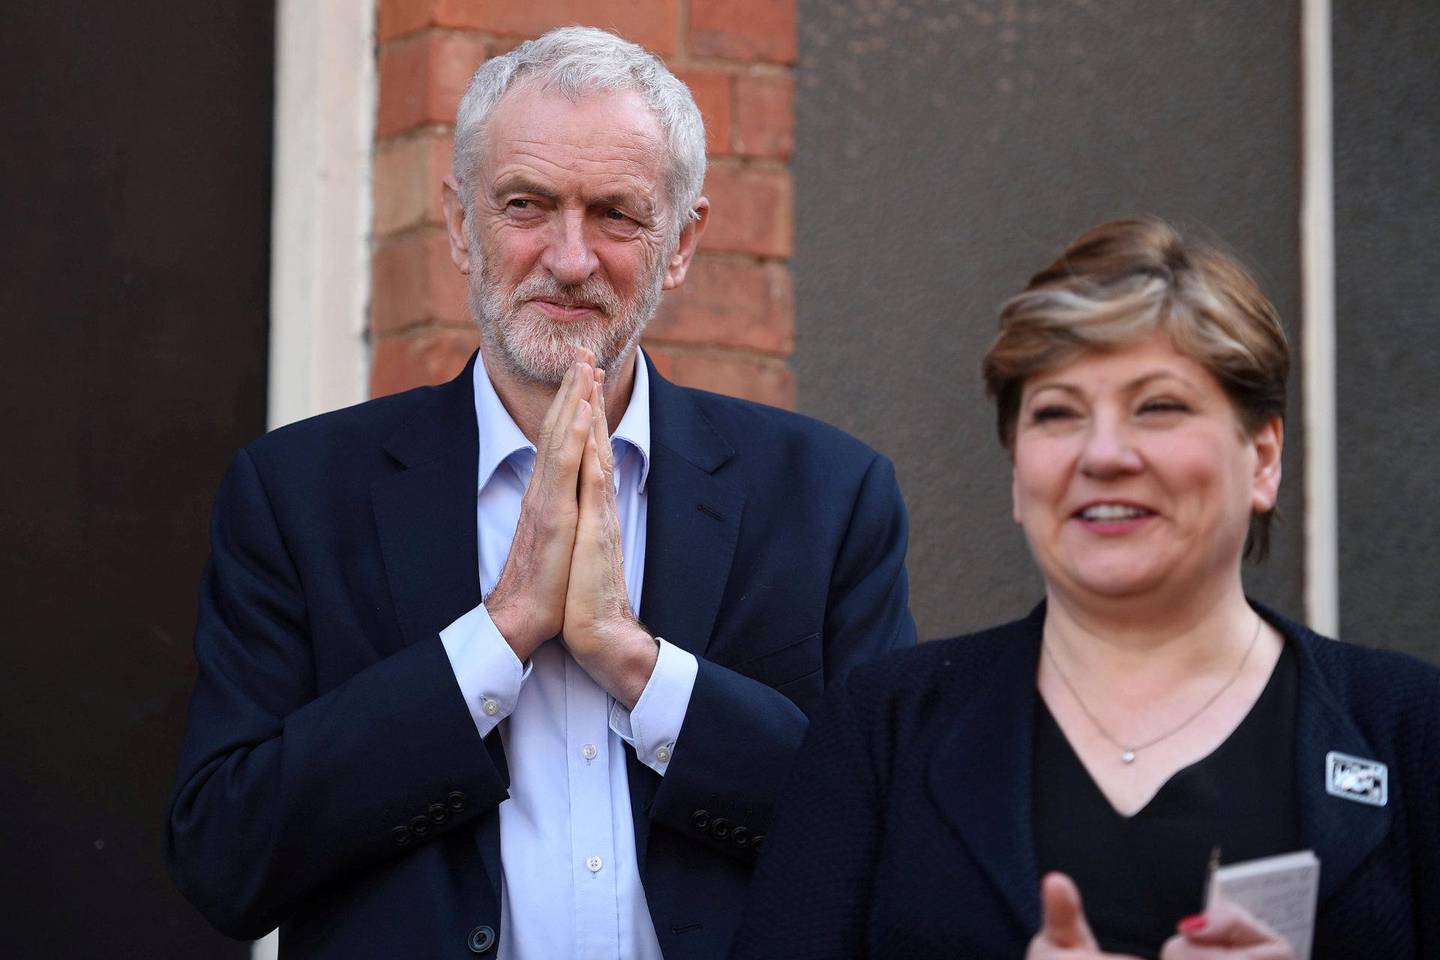 STERKT UT: Både Labour-leder Jeremy Corbyn og skyggeutenriksminister Emily Thornberry har gått sterkt ut mot statsbesøket. FOTO: NTB SCANPIX